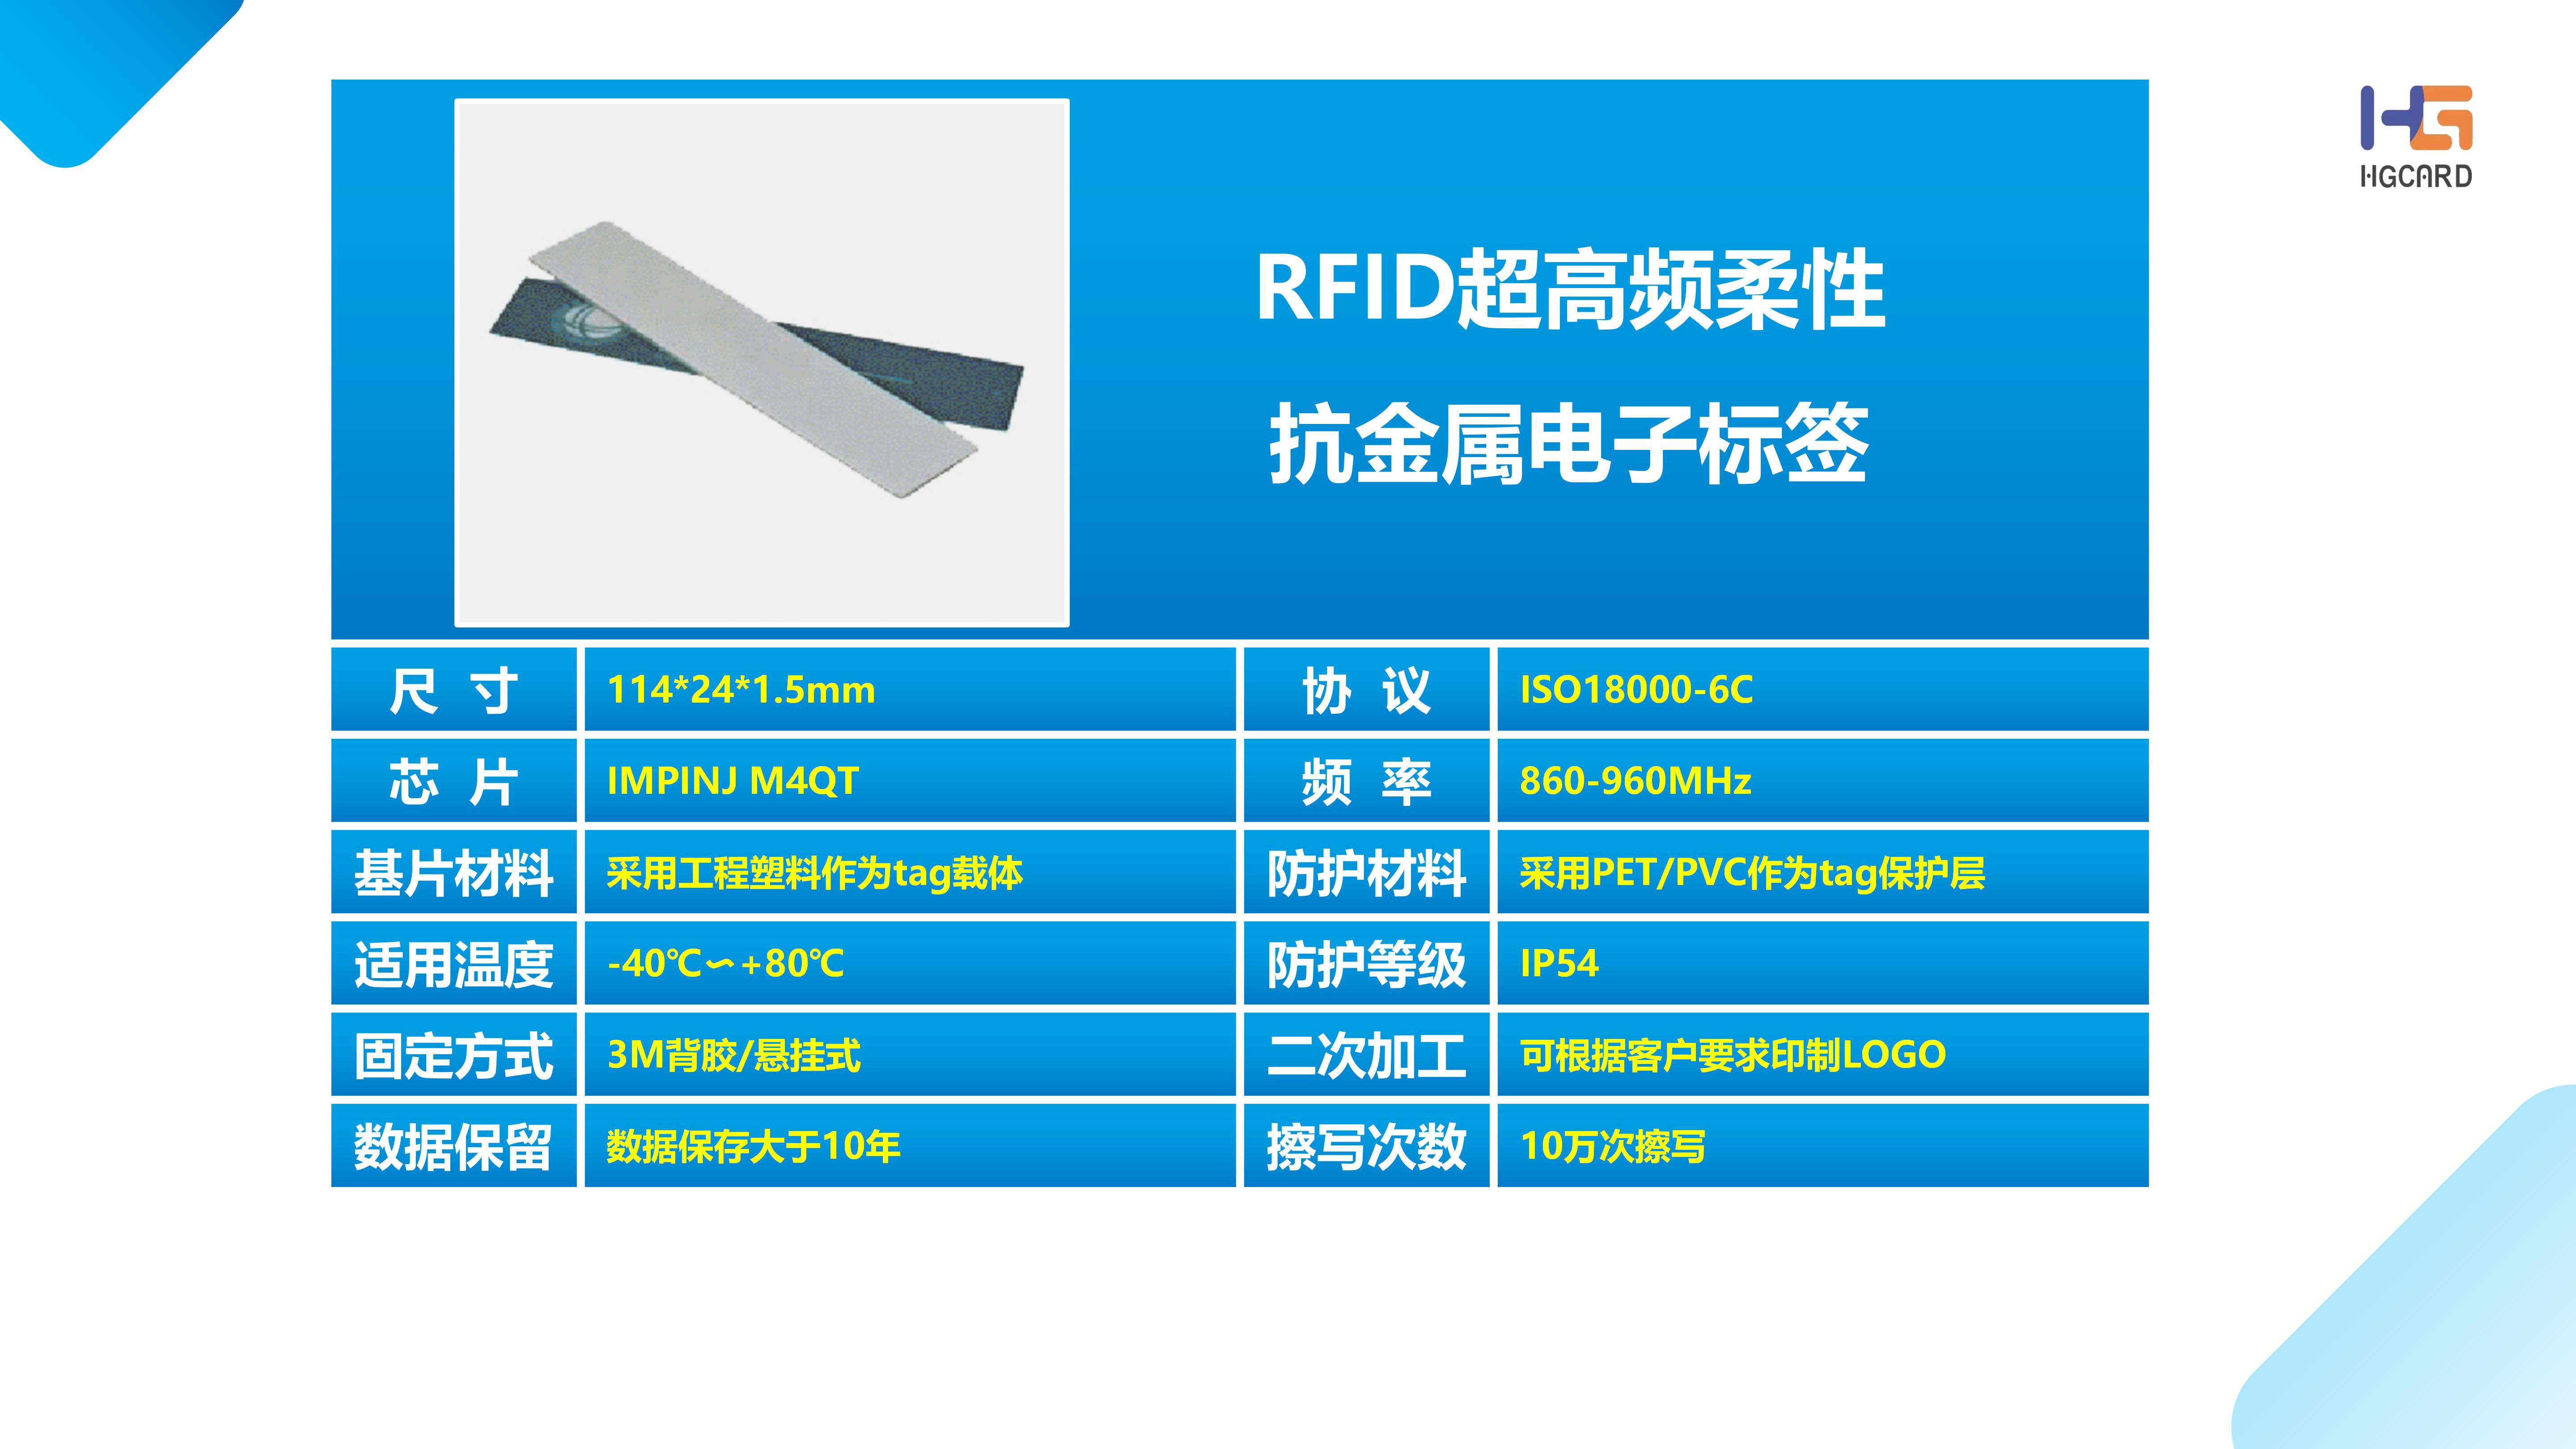 RFID超高柔性抗金属.jpg